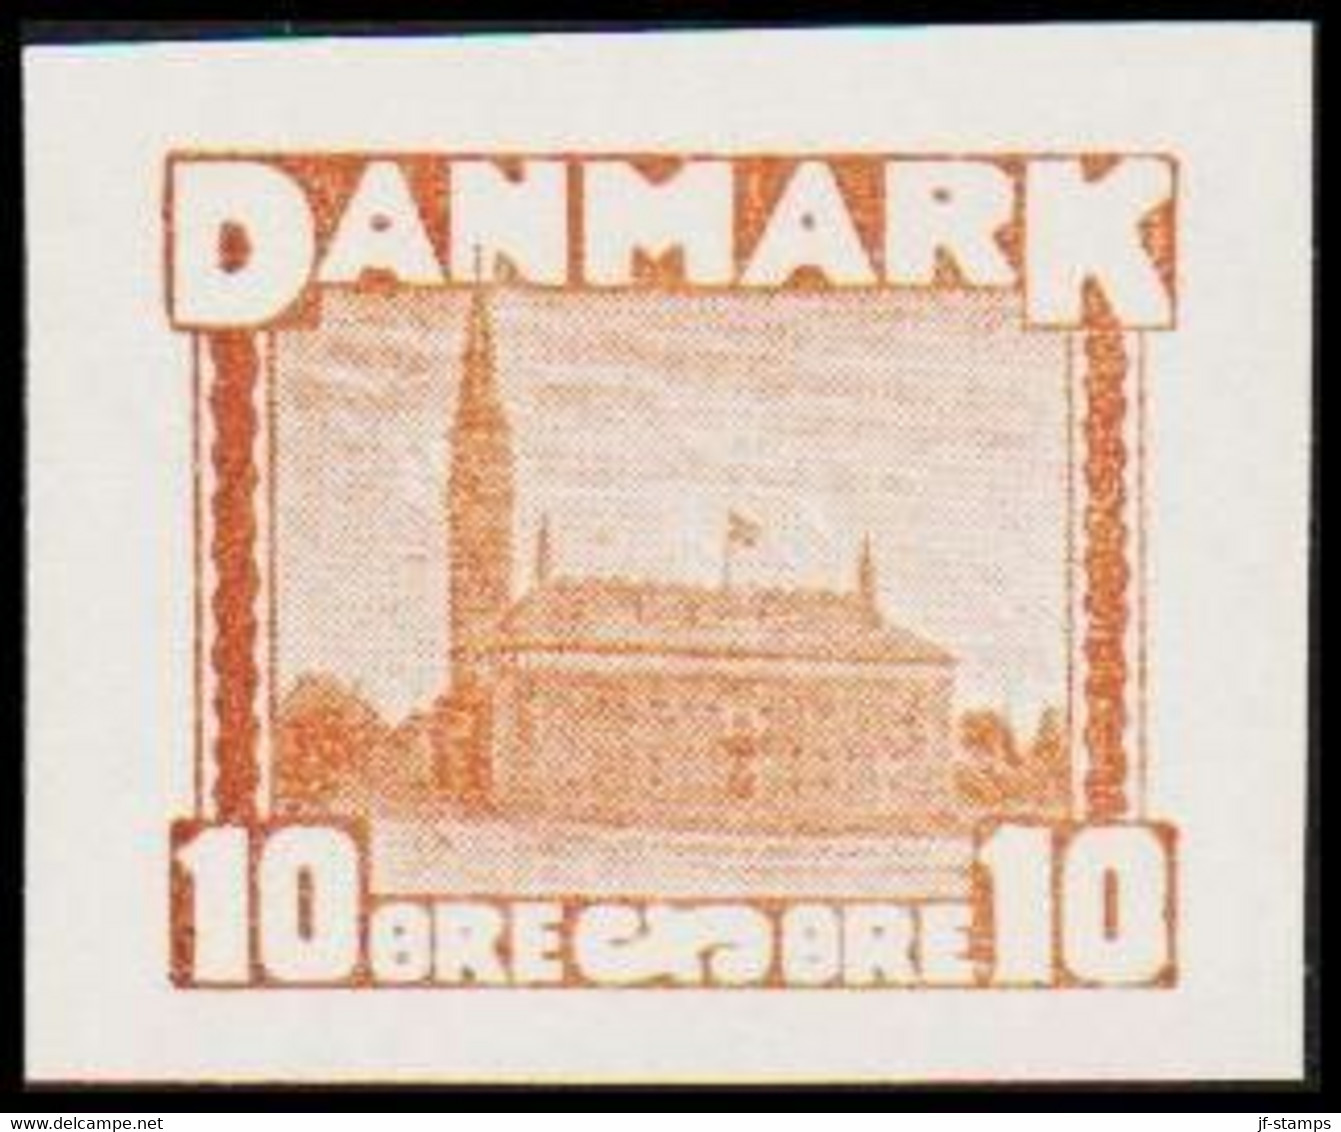 1930. DANMARK. Essay. Københavns Rådhus - City Hall. 10 øre. - JF525252 - Proofs & Reprints